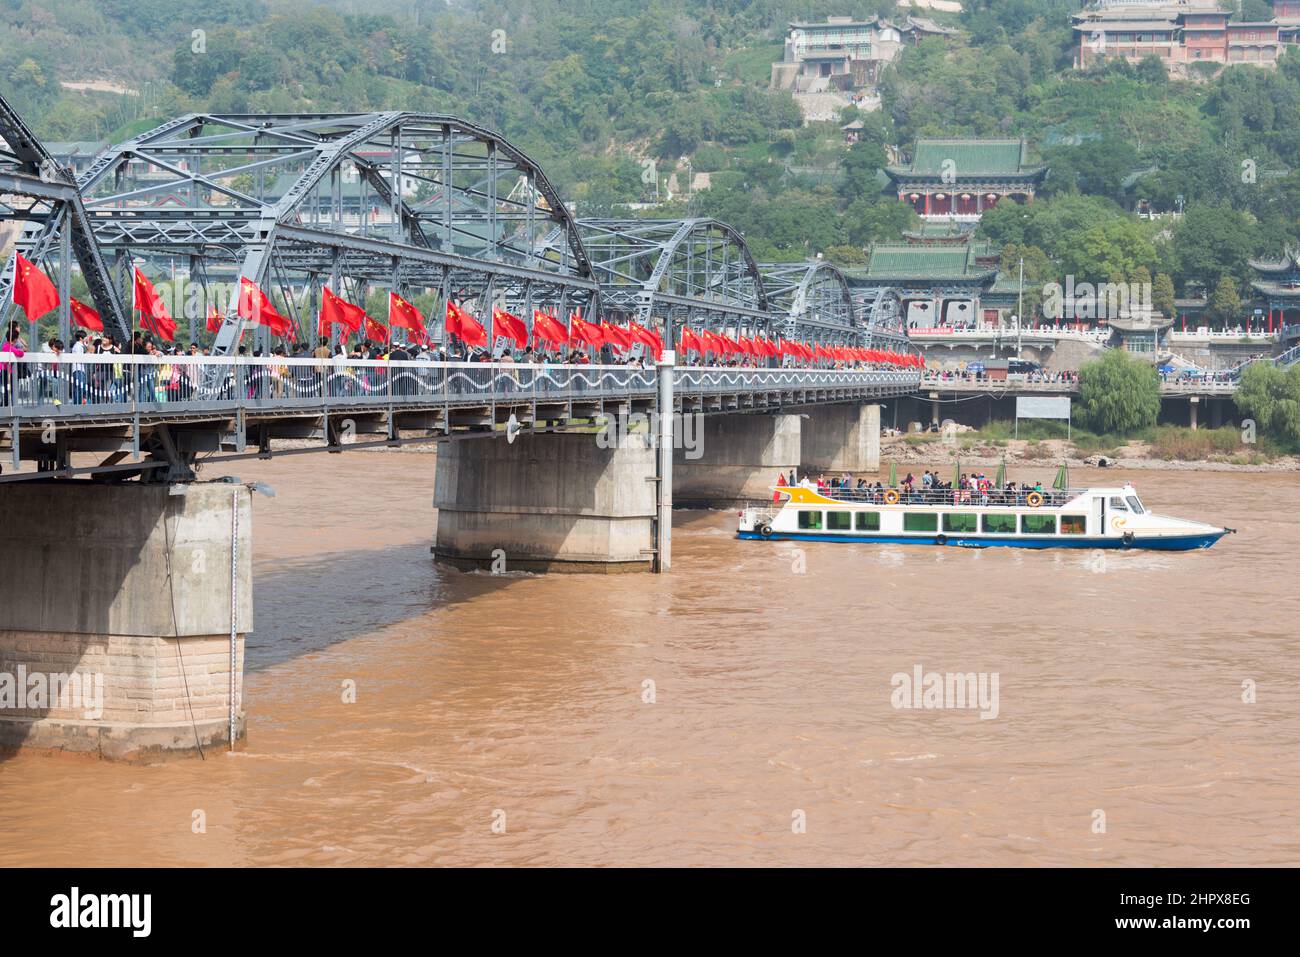 LANZHOU, CHINA - Sun Yat-Sen Bridge (Zhongshan Qiao). a famous First Bridge across the Yellow River in Lanzhou, Gansu, China. Stock Photo